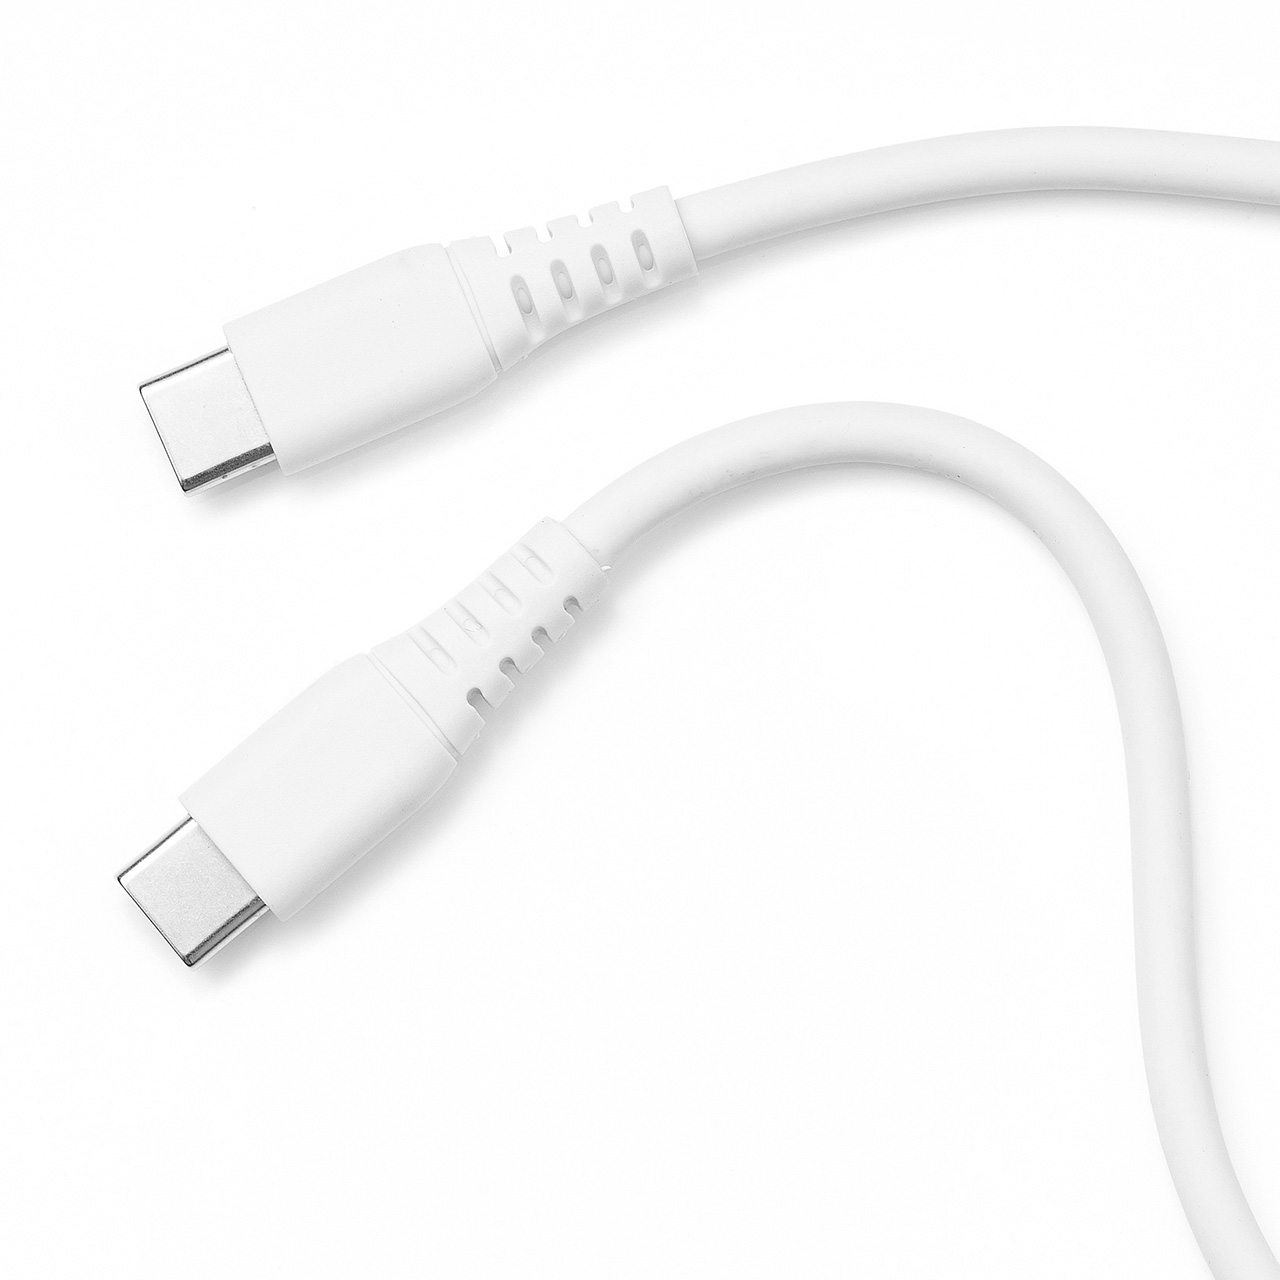 【 iPad（第10世代）対応】 やわらか USB  Type-Cケーブル 絡まない PD100W CtoC タイプC USB2.0 電源ケーブル 2m ホワイト 500-USB074-2